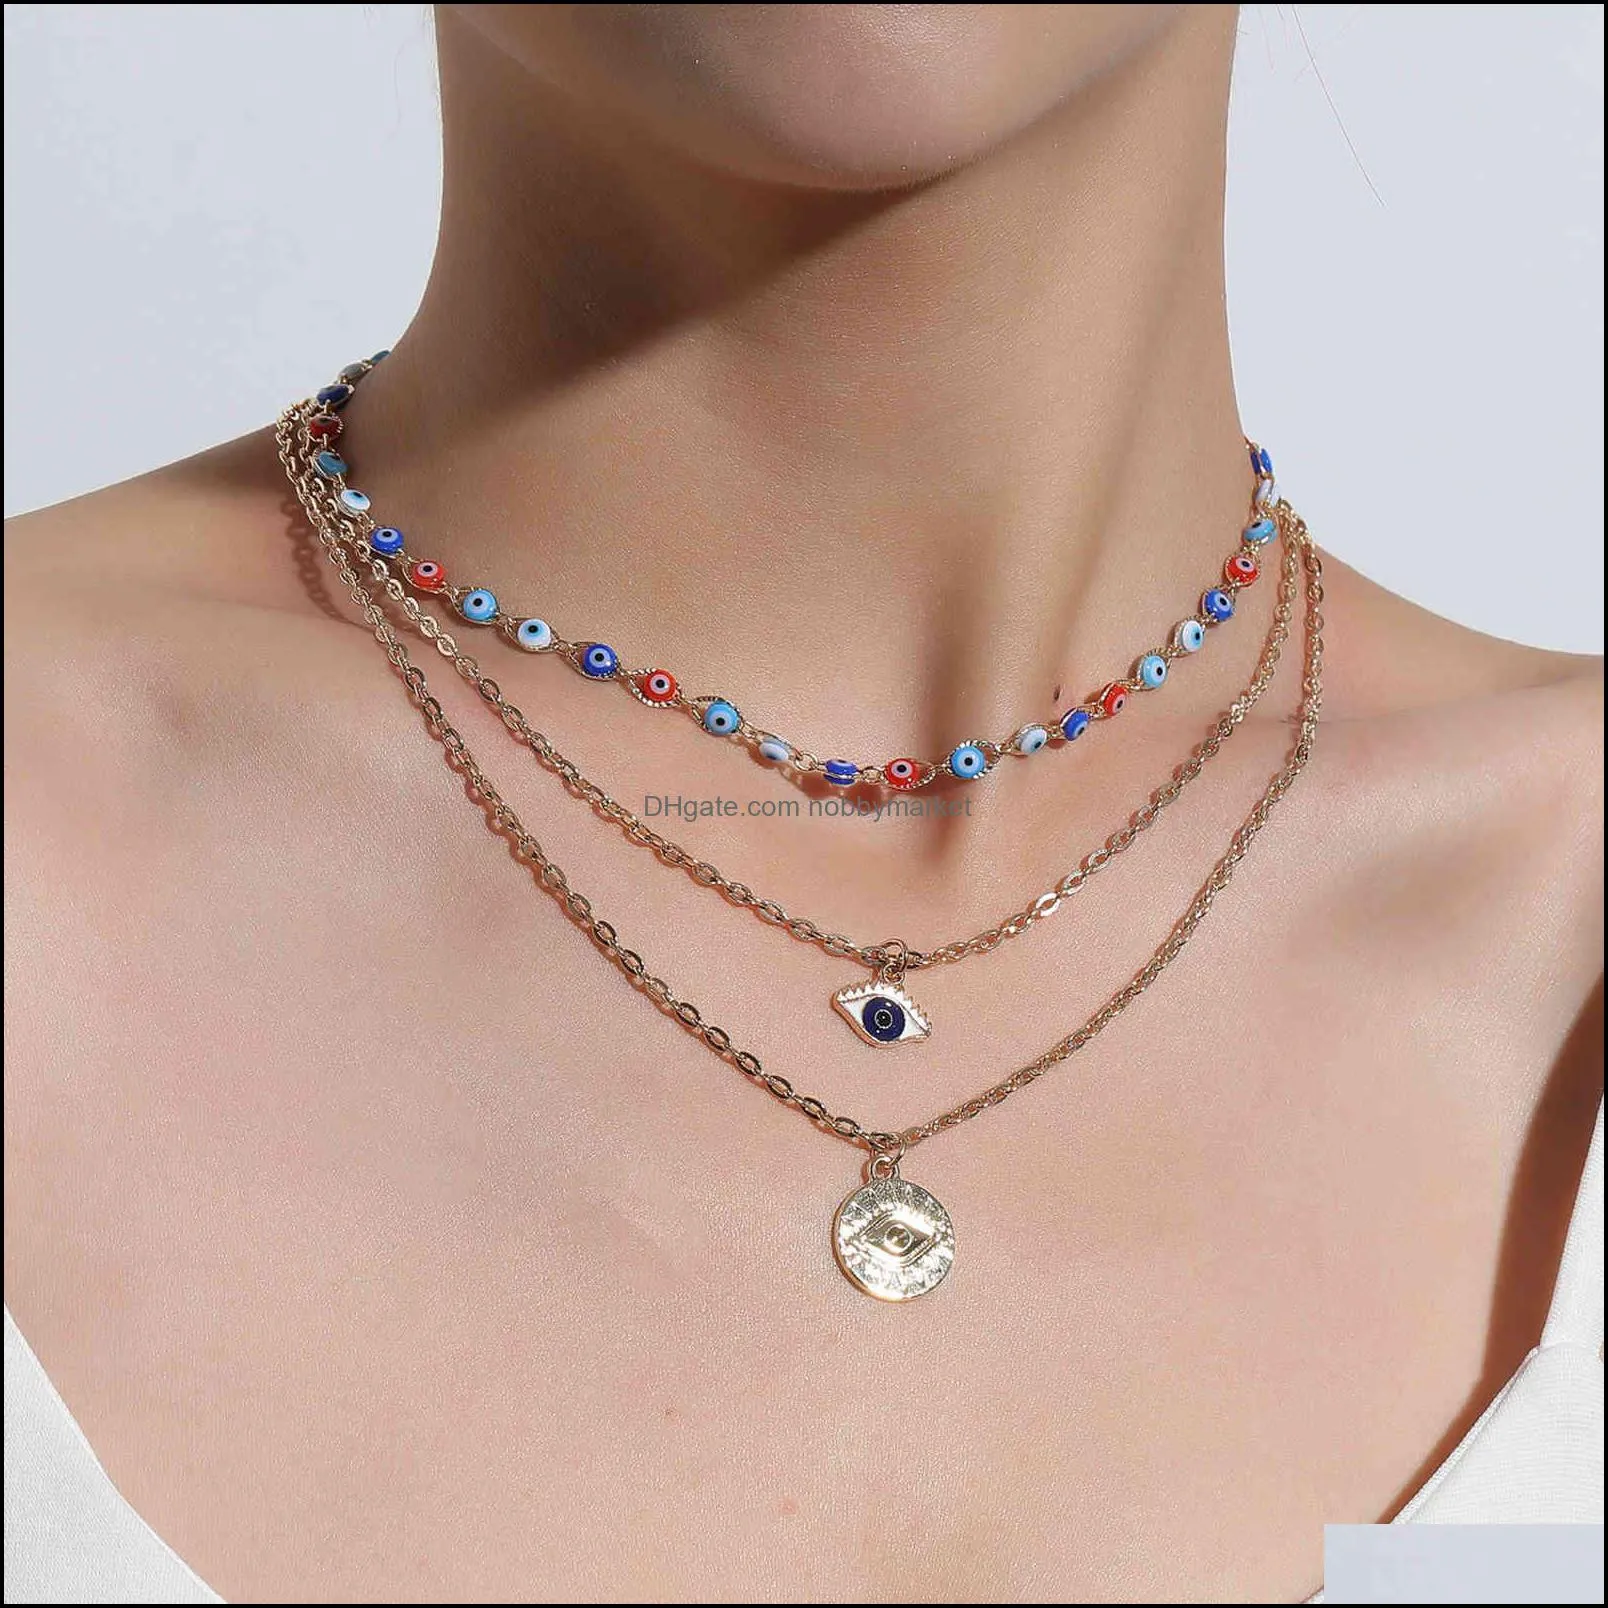 Inne mody Aessories Jewelry Mti-Layer Devils Wisiorek Kobiet przesadzone Trend Eye Naszyjnik Drop Dostawa 2021 EJGBP